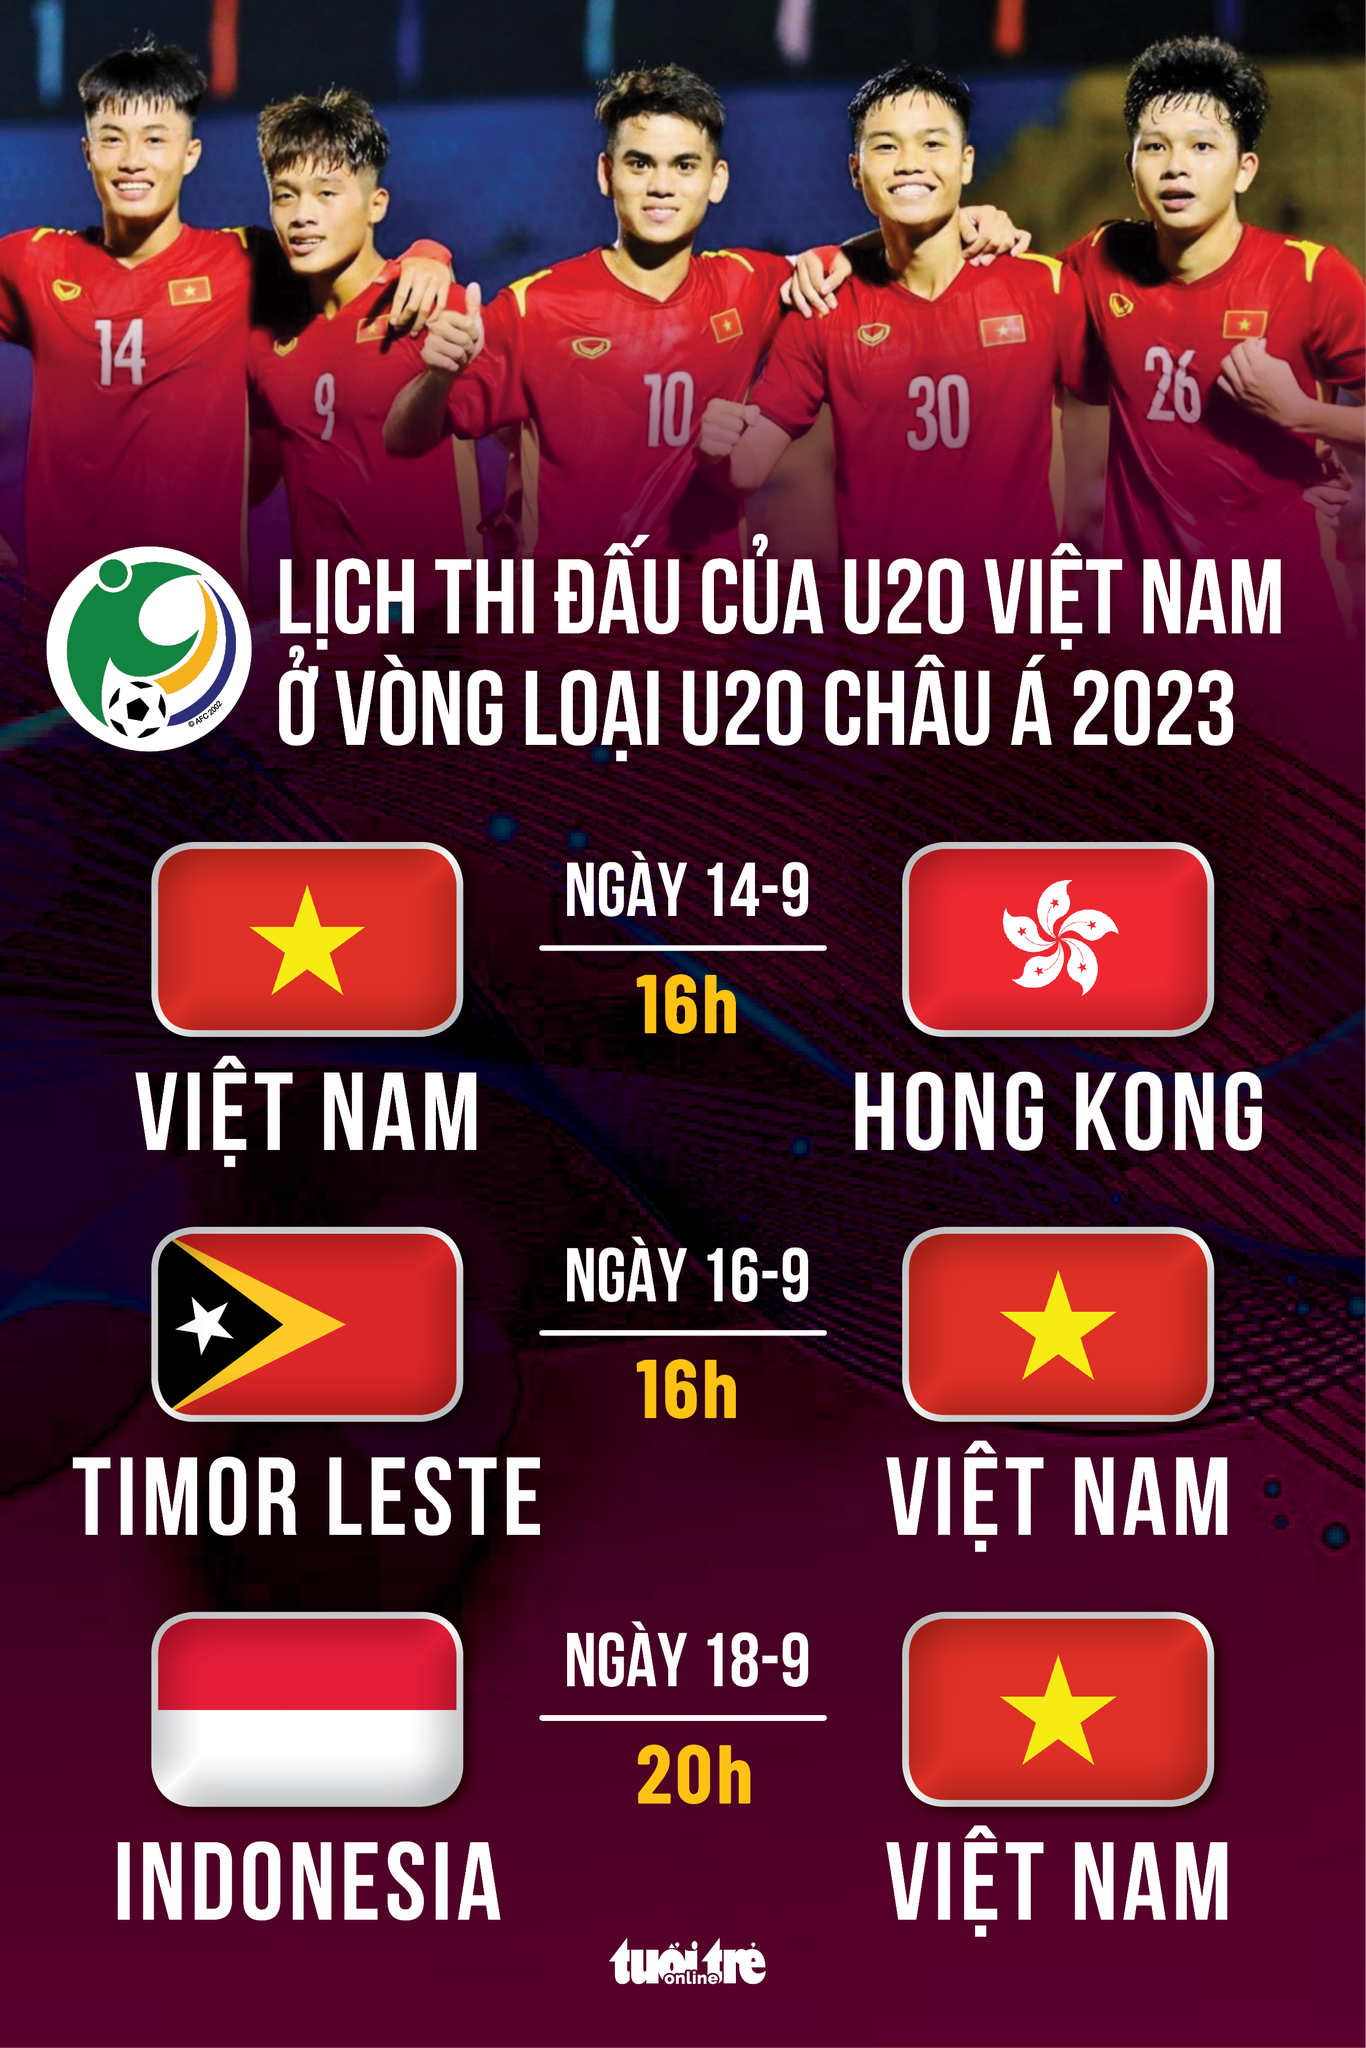 Lịch thi đấu của U20 Việt Nam tại vòng loại U20 châu Á 2022 - Ảnh 1.